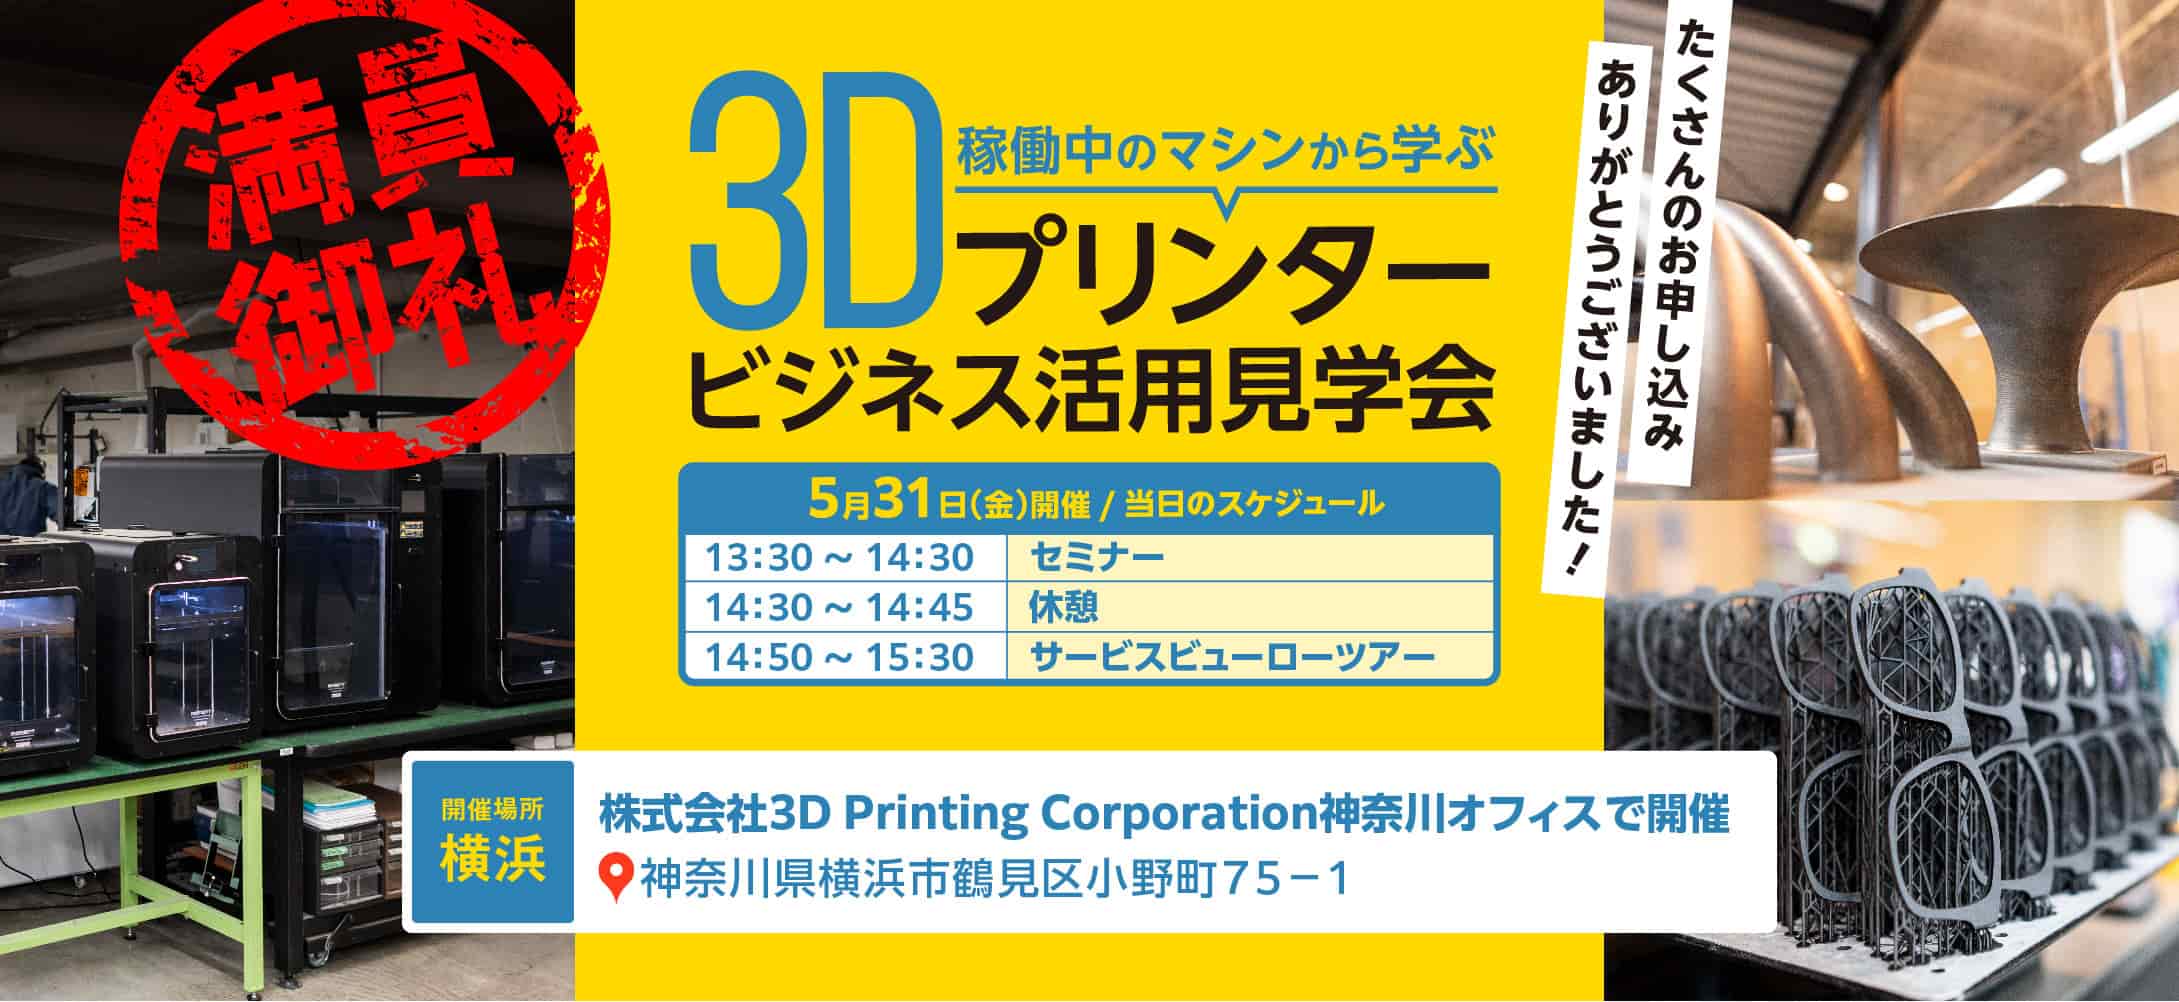 3Dプリンタービジネス活用見学会